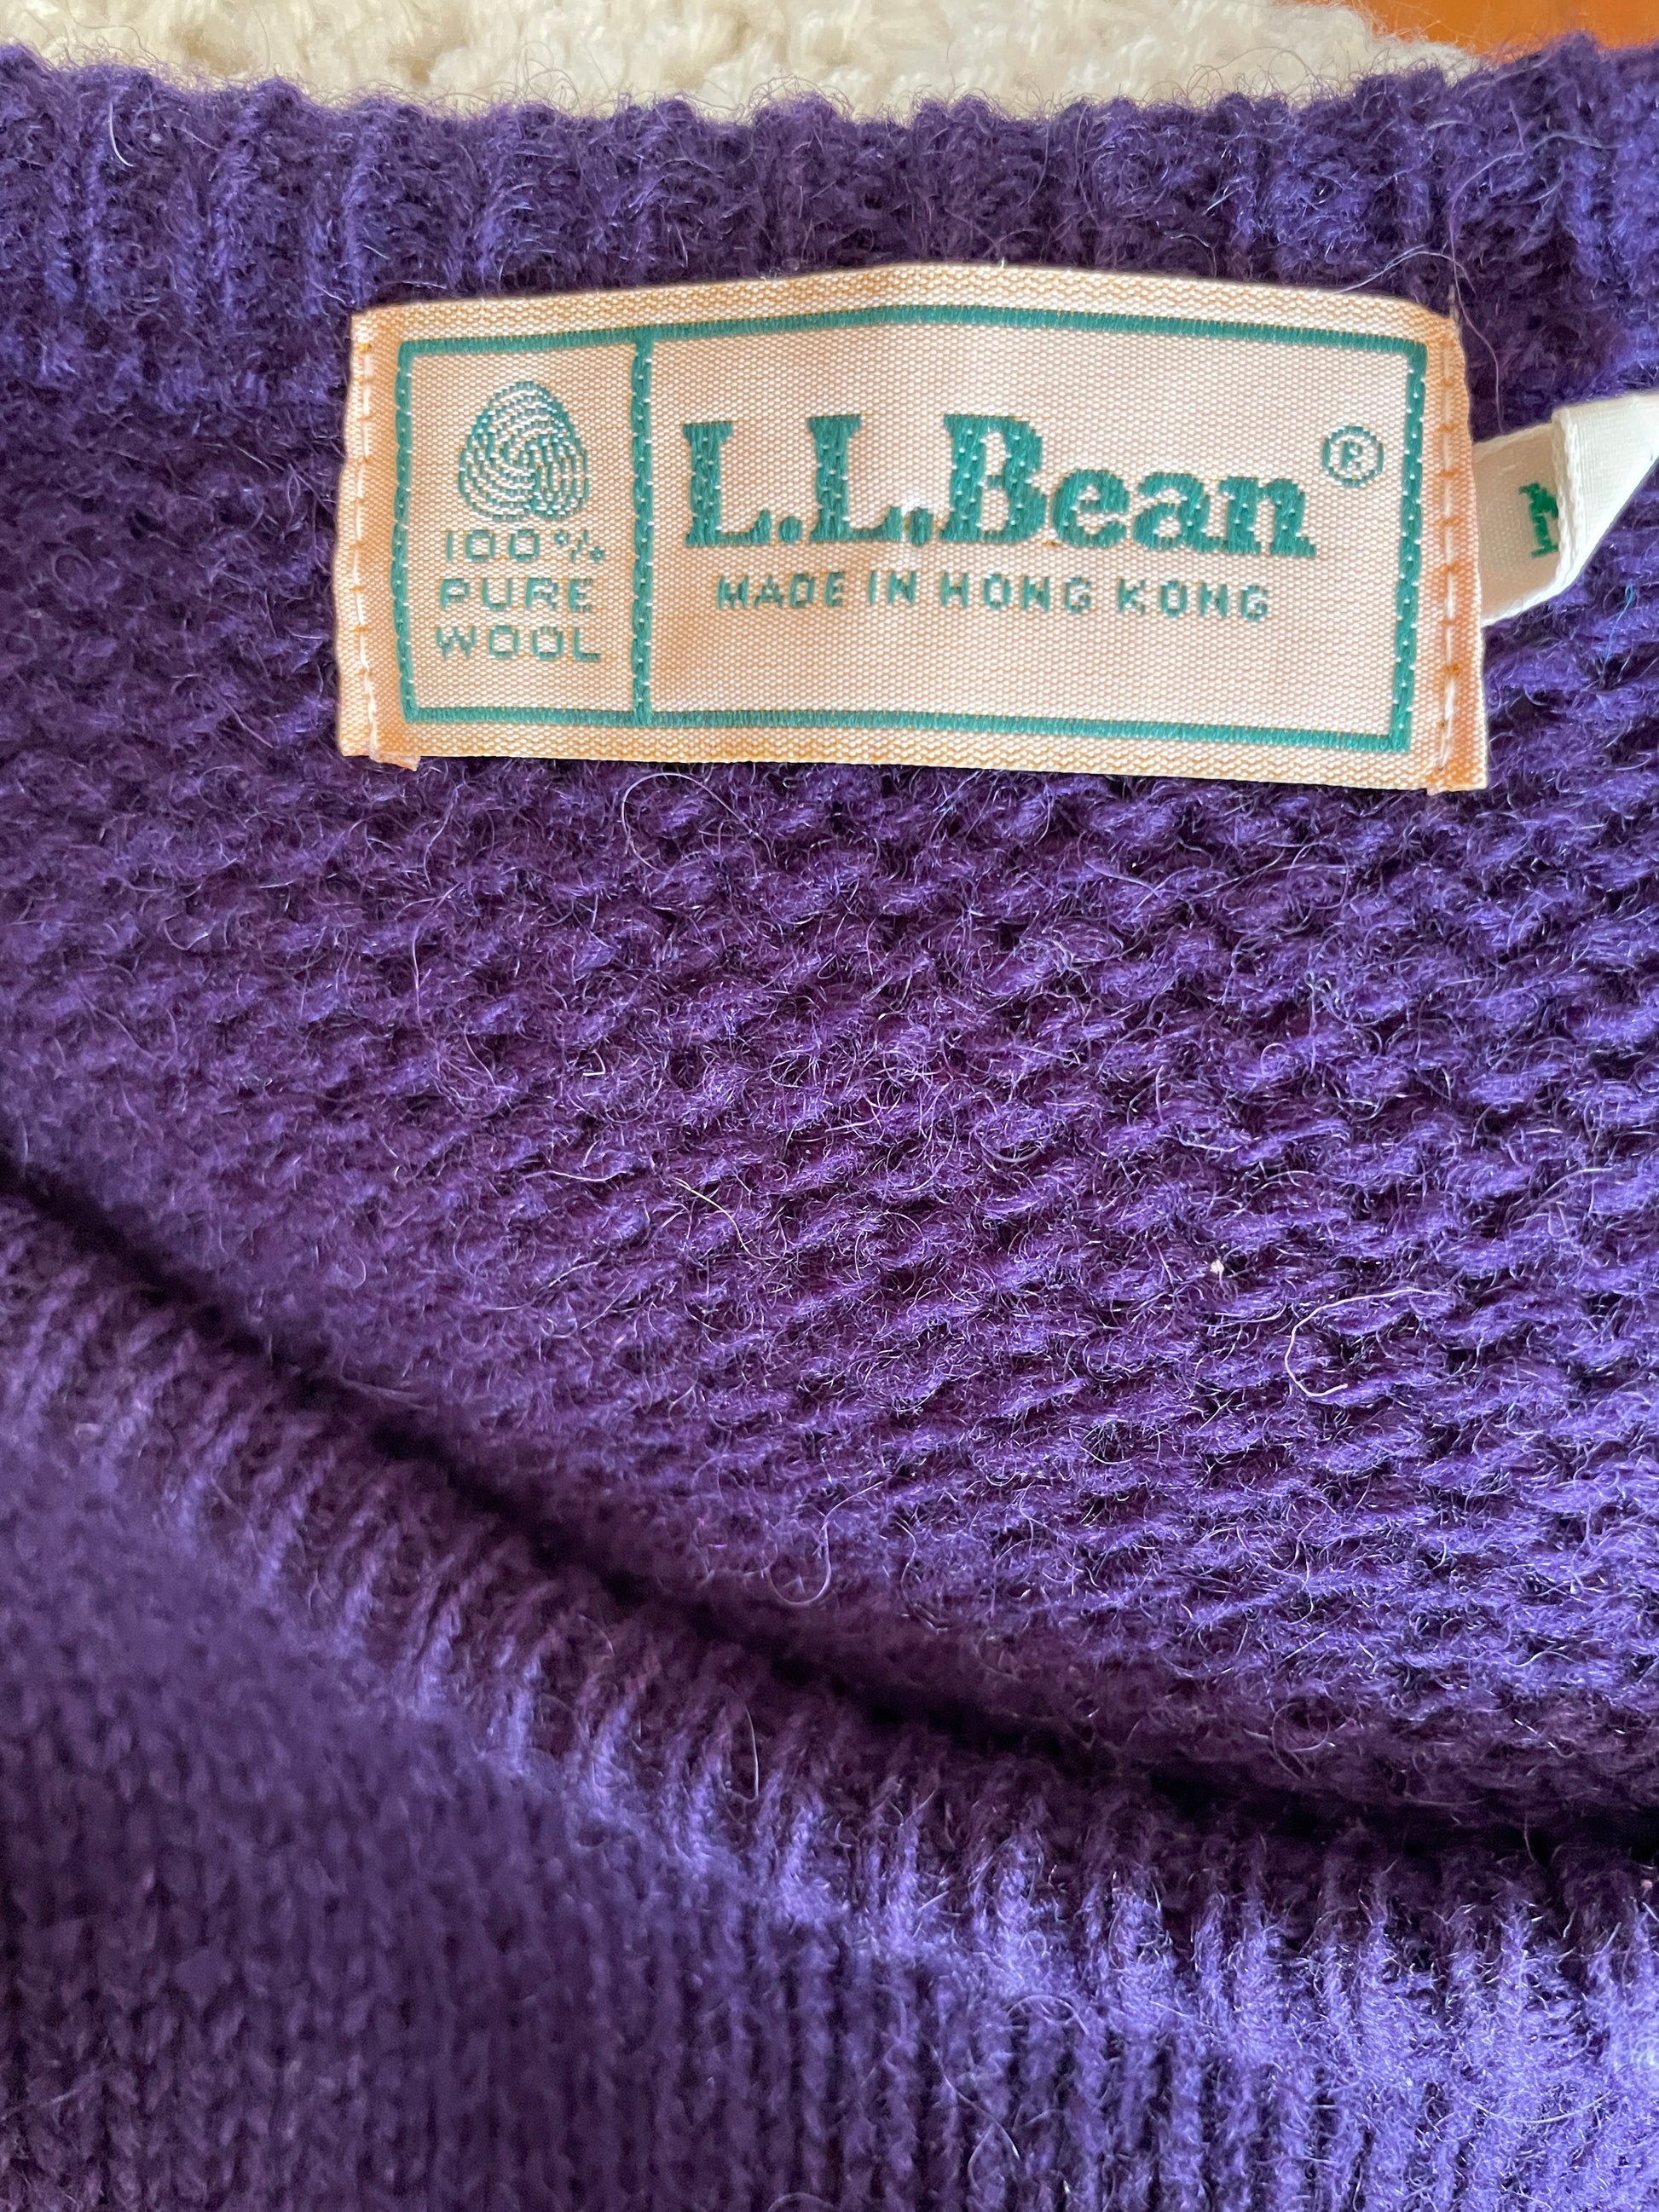  L. L. Bean 80s Purple Pure Wool Pullover Knit Sweater